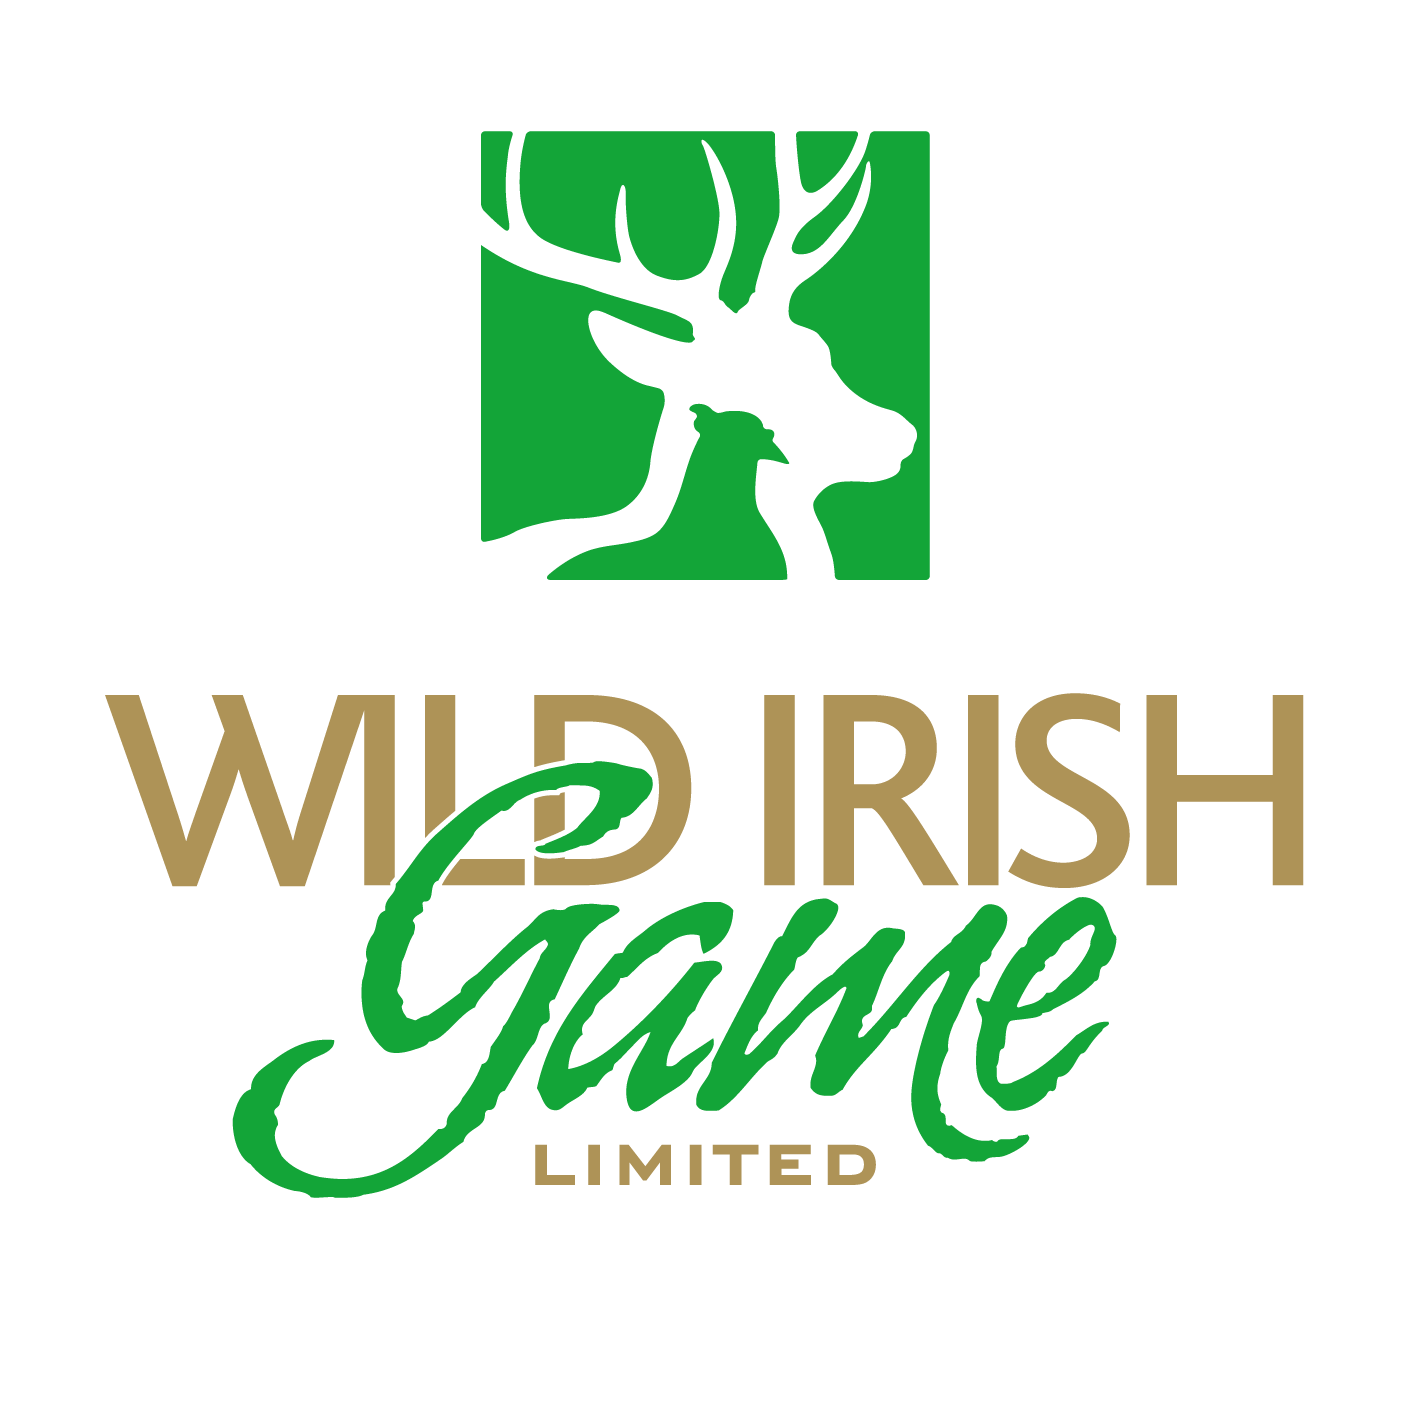 Wild Irish Game